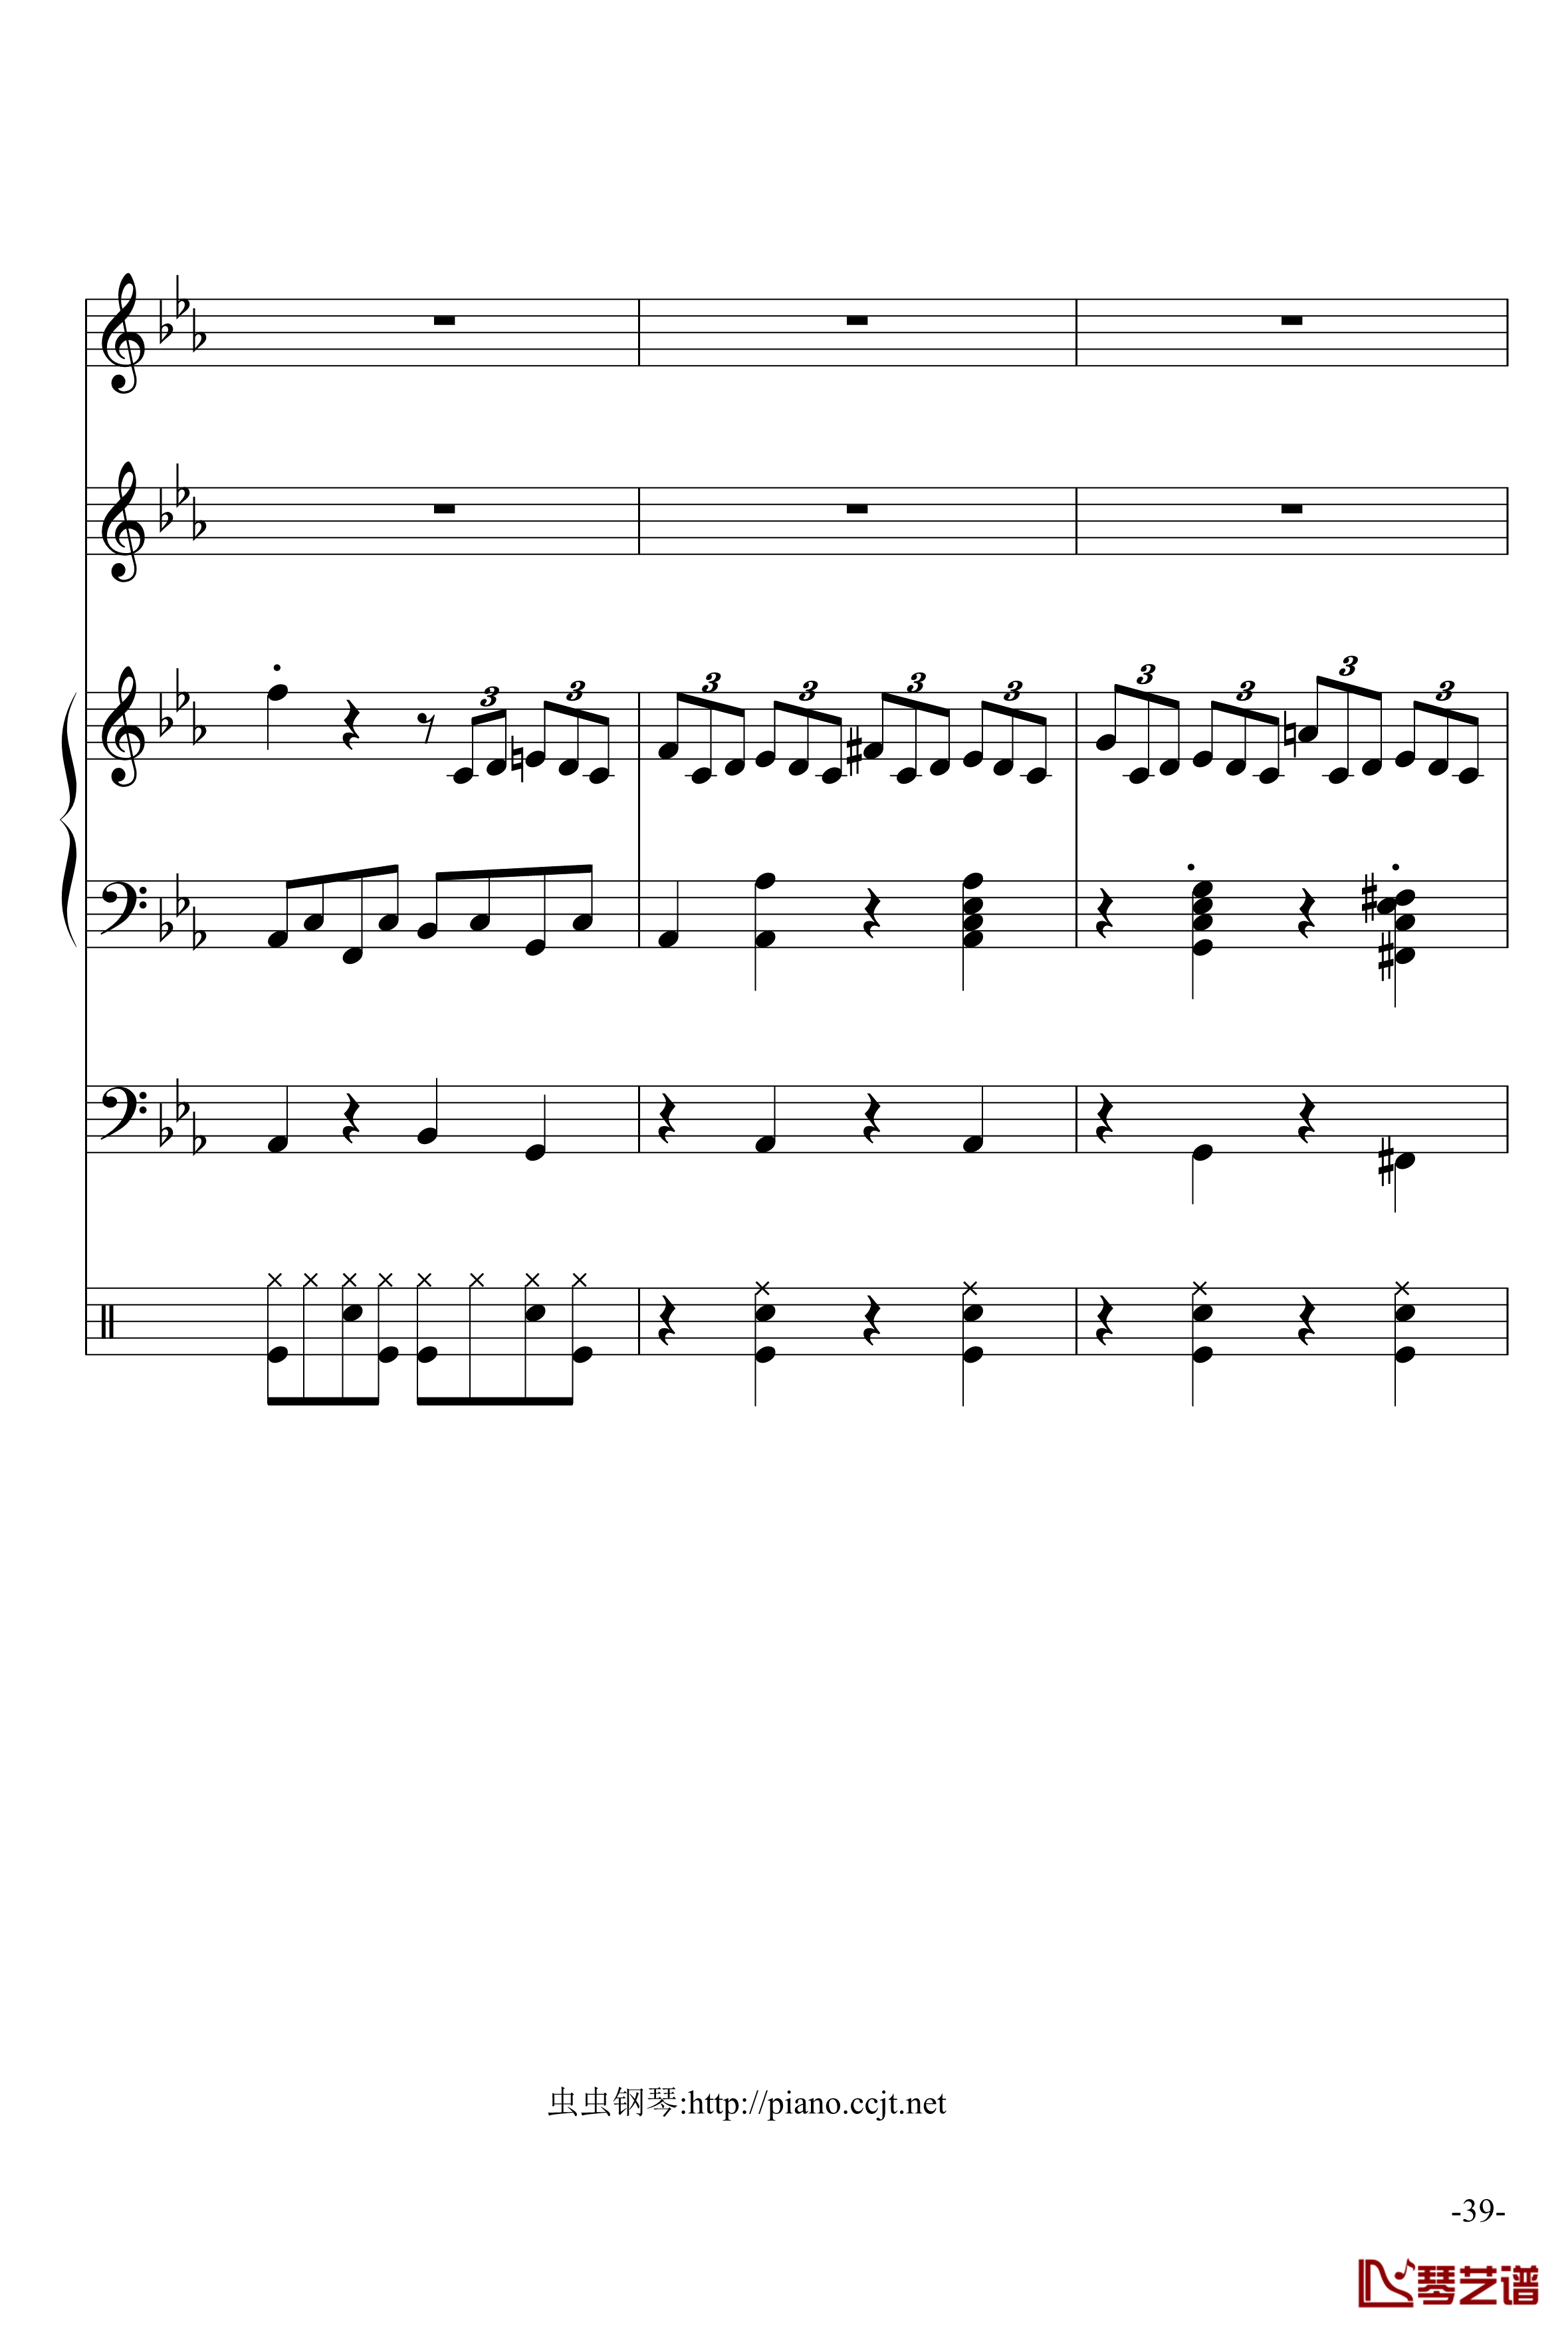 悲怆奏鸣曲钢琴谱-加小乐队-贝多芬-beethoven39